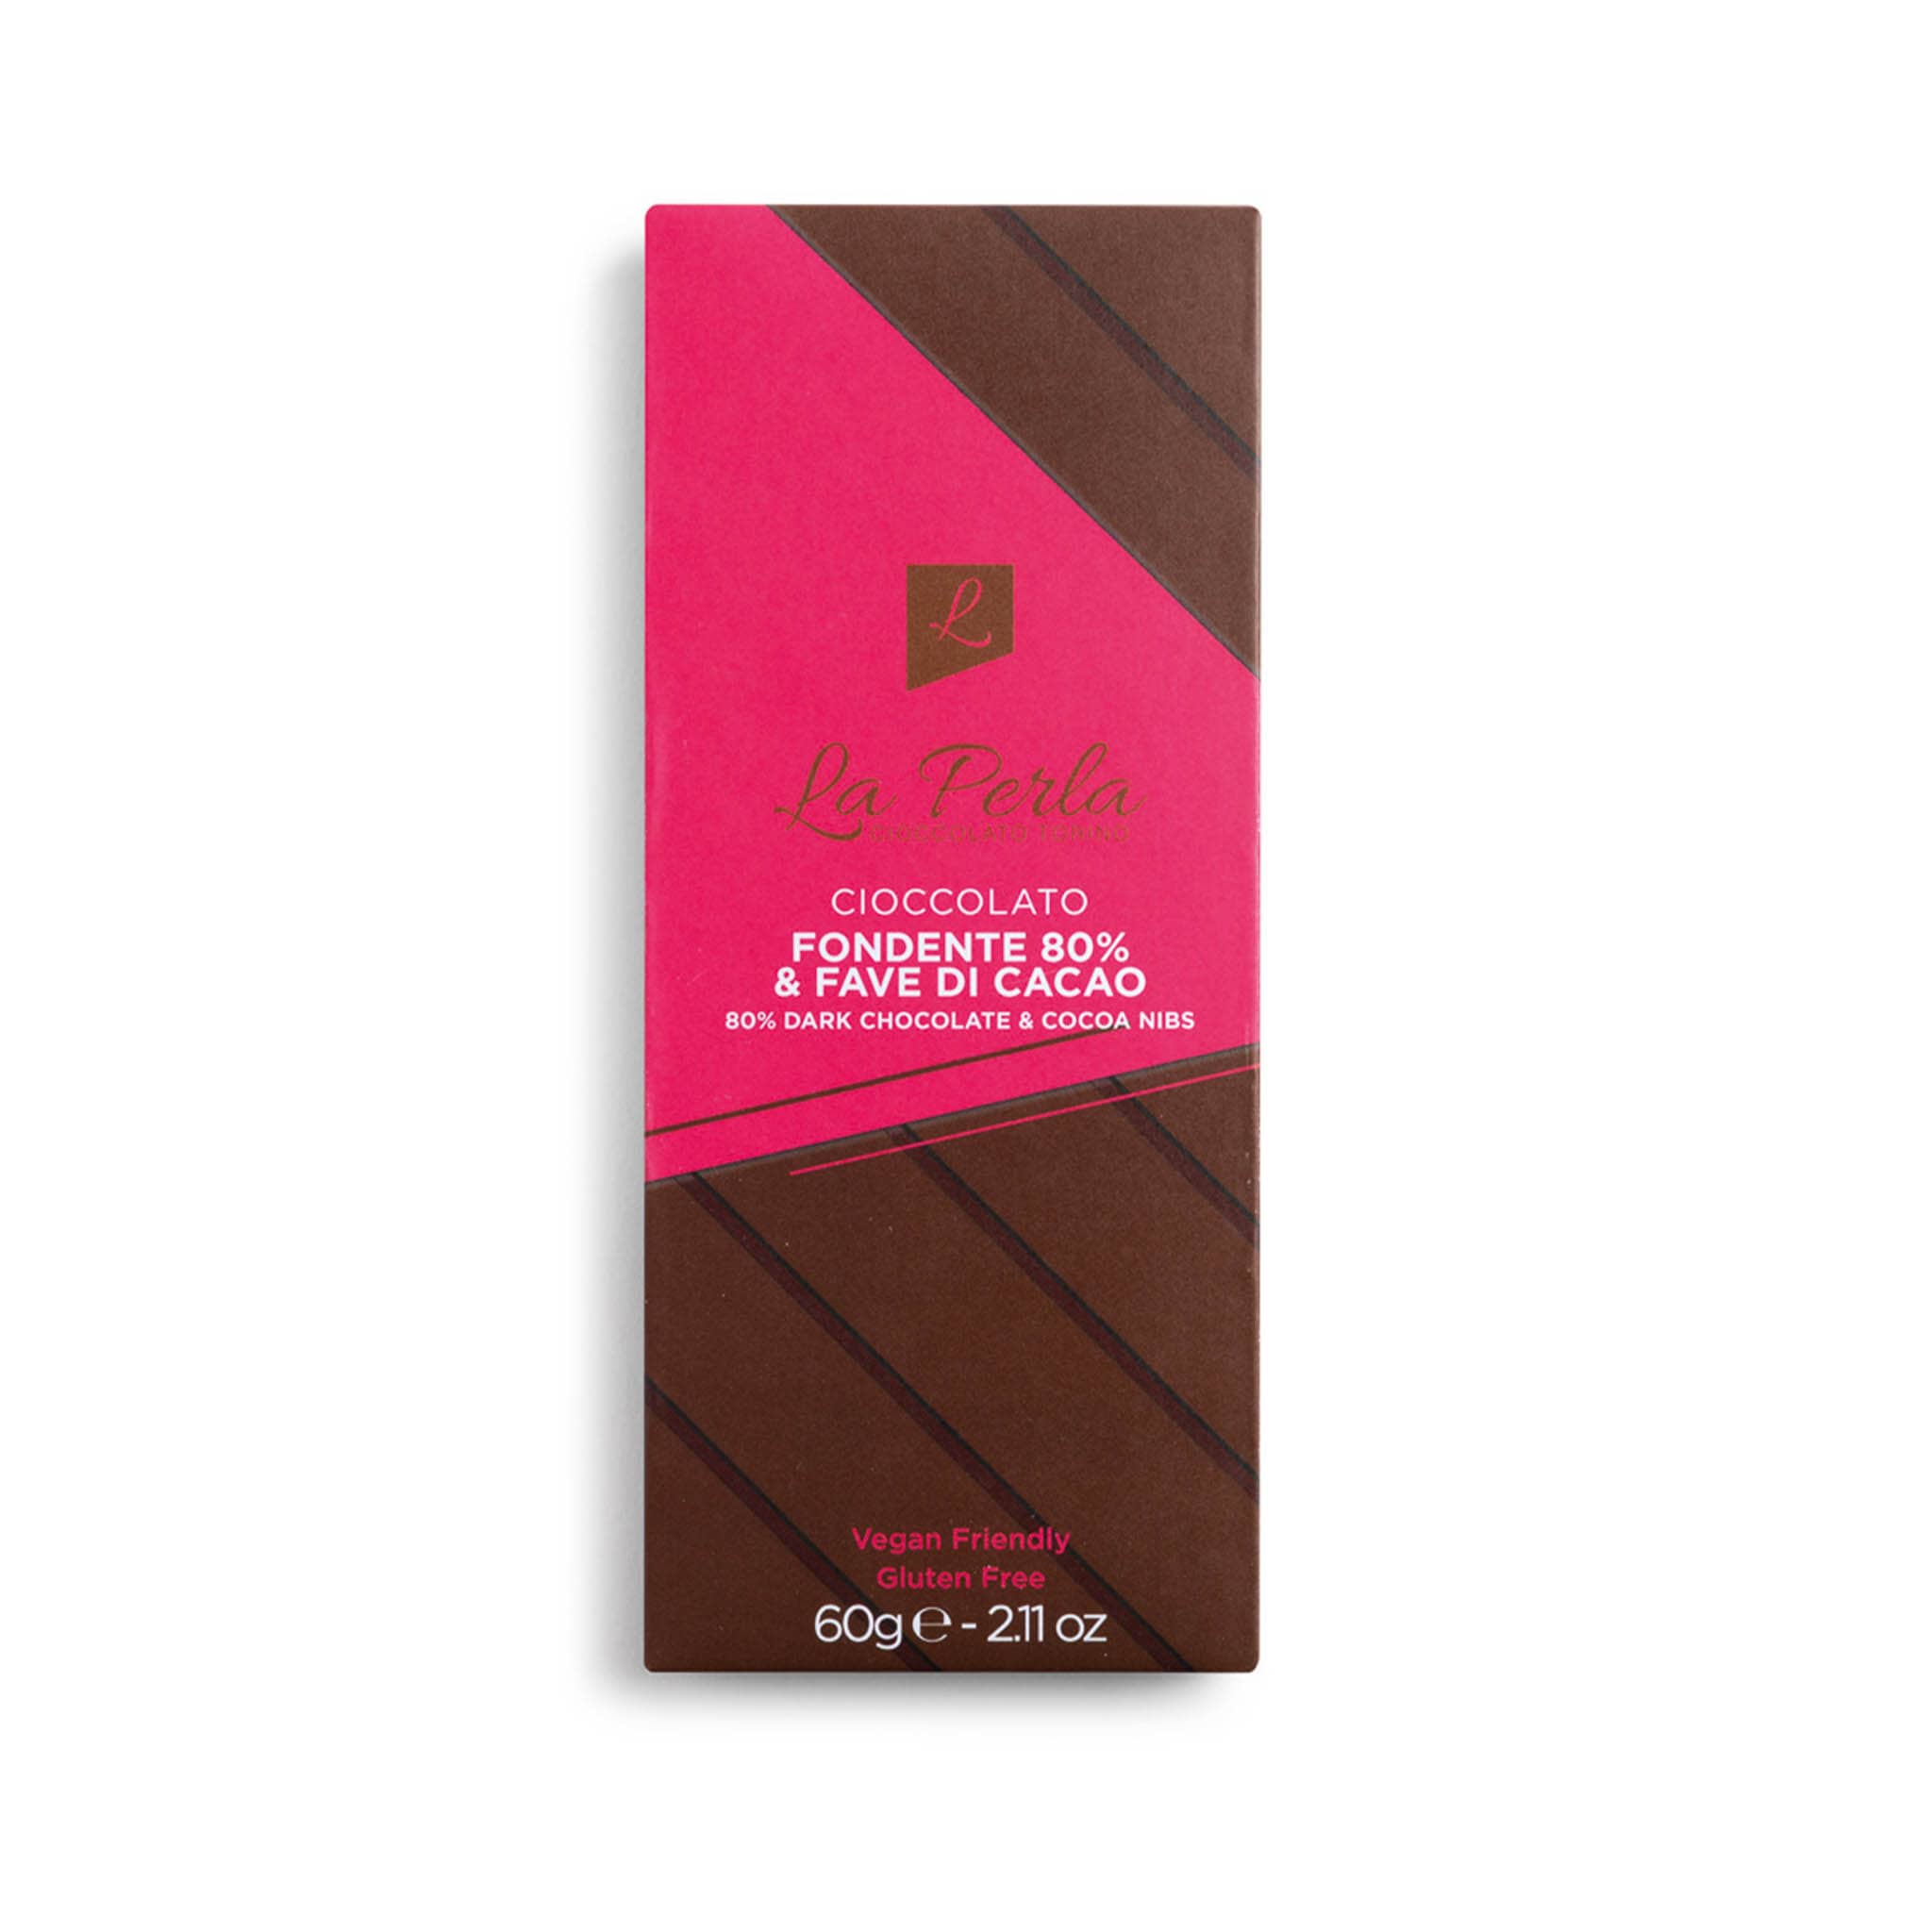 La Perla di Torino Cocoa Nibs & 80% Dark Chocolate Bar, 60g